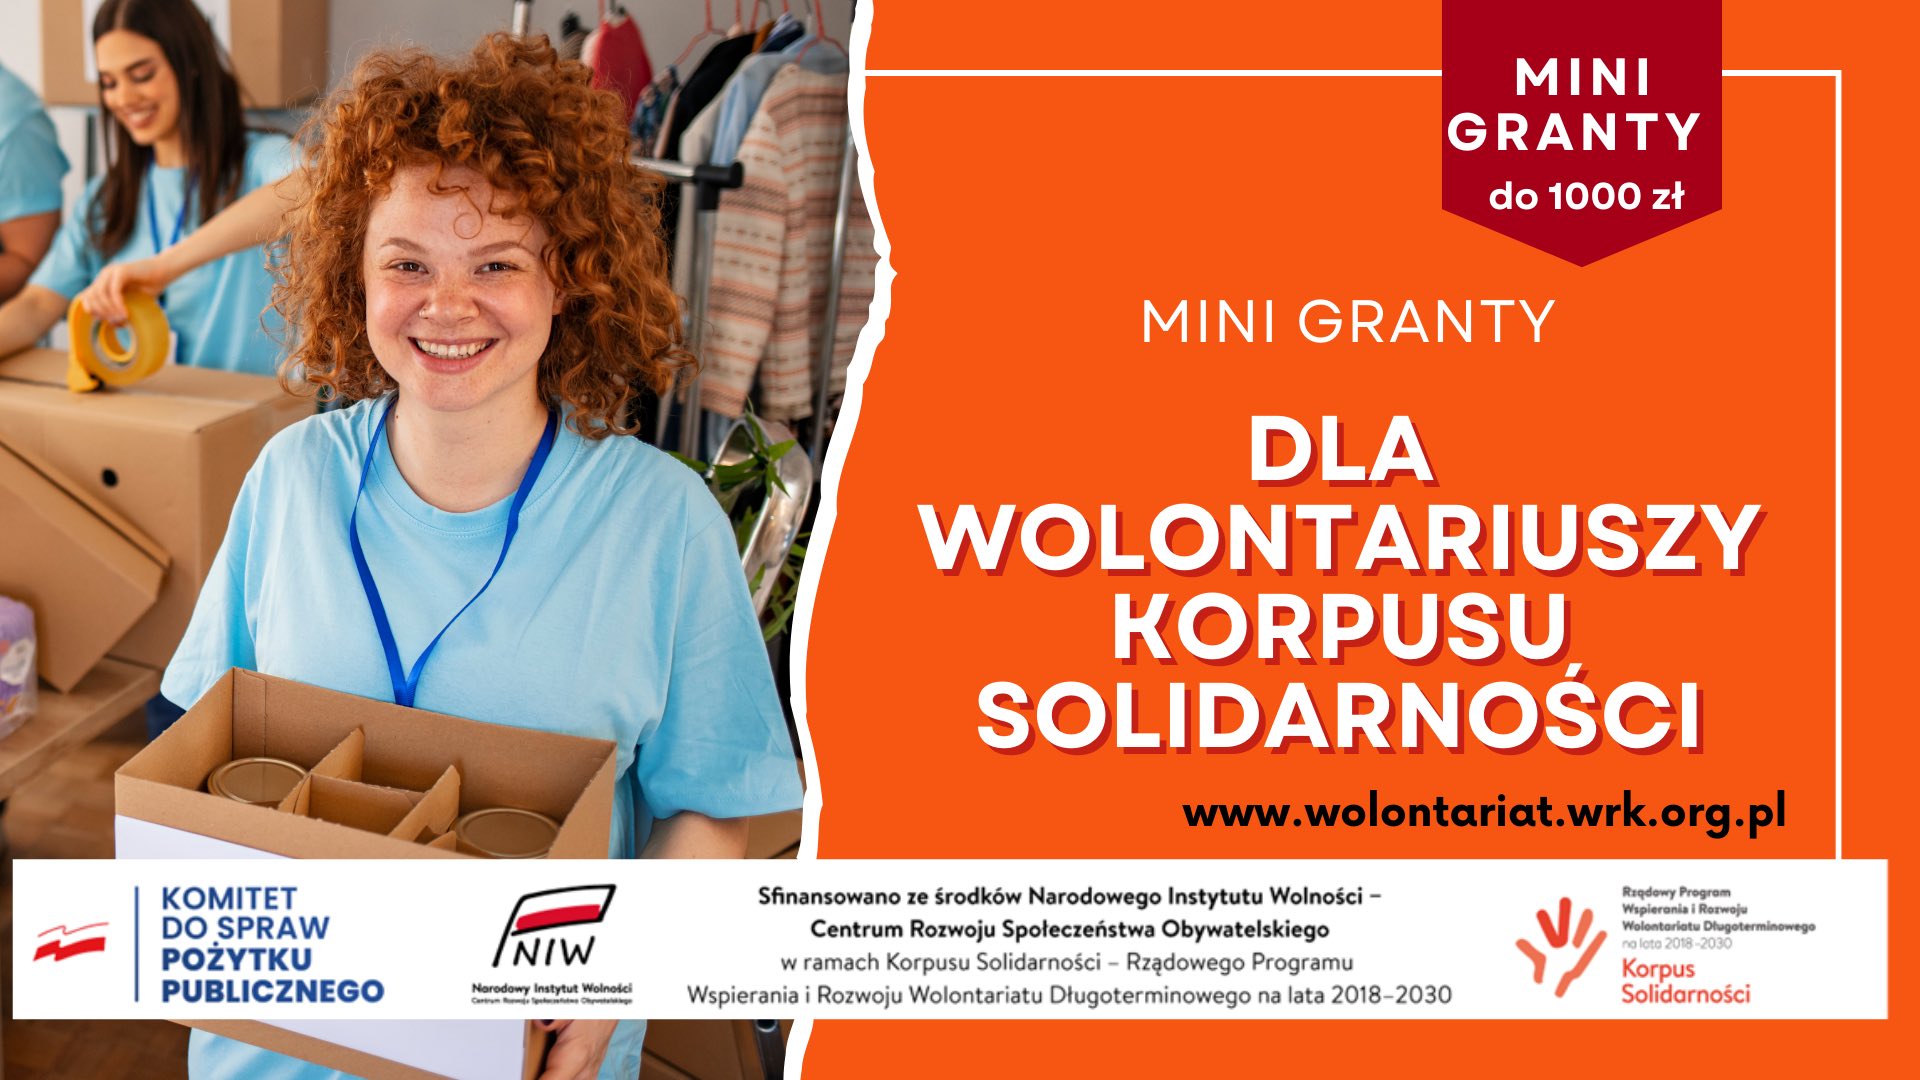 You are currently viewing Minigranty dla wielkopolskich wolontariuszy